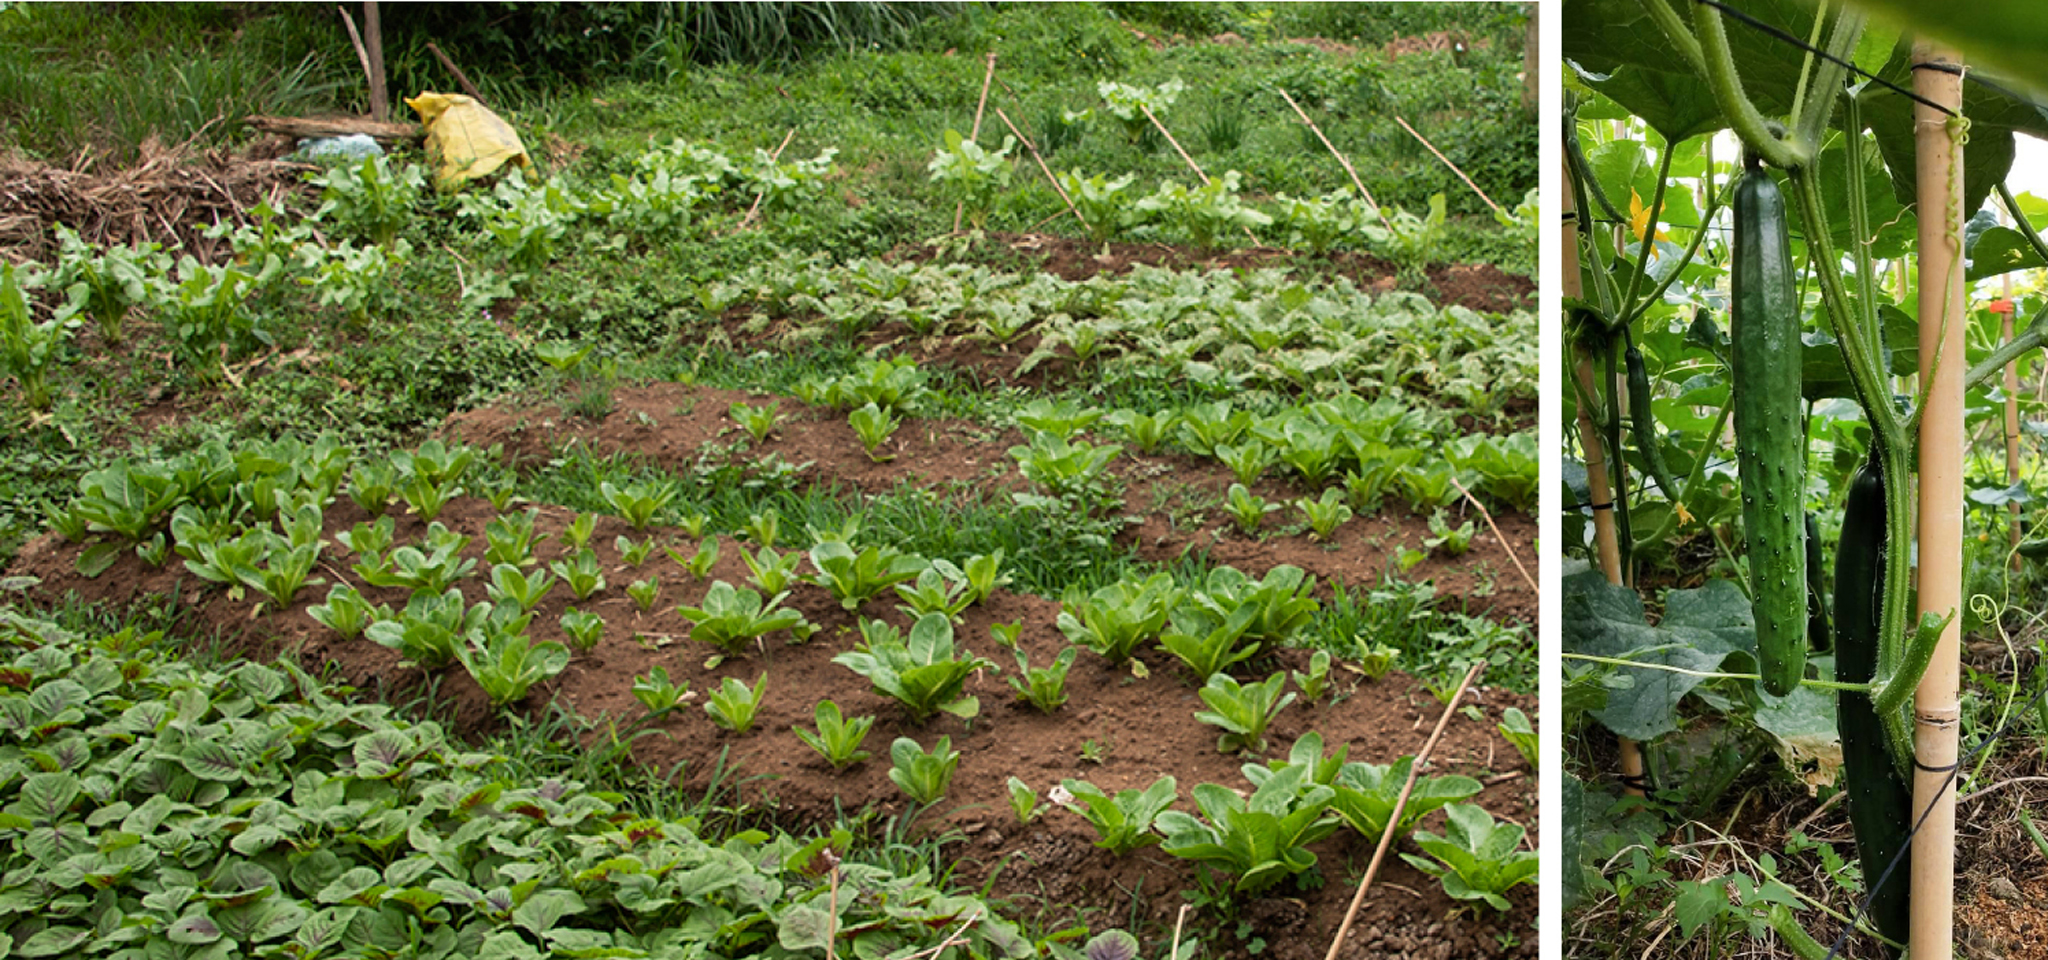 左圖：士林第九市民農園堅持不使用農藥與化學肥料。右圖：士林第九市民農園的小黃瓜「一暝大一寸」。